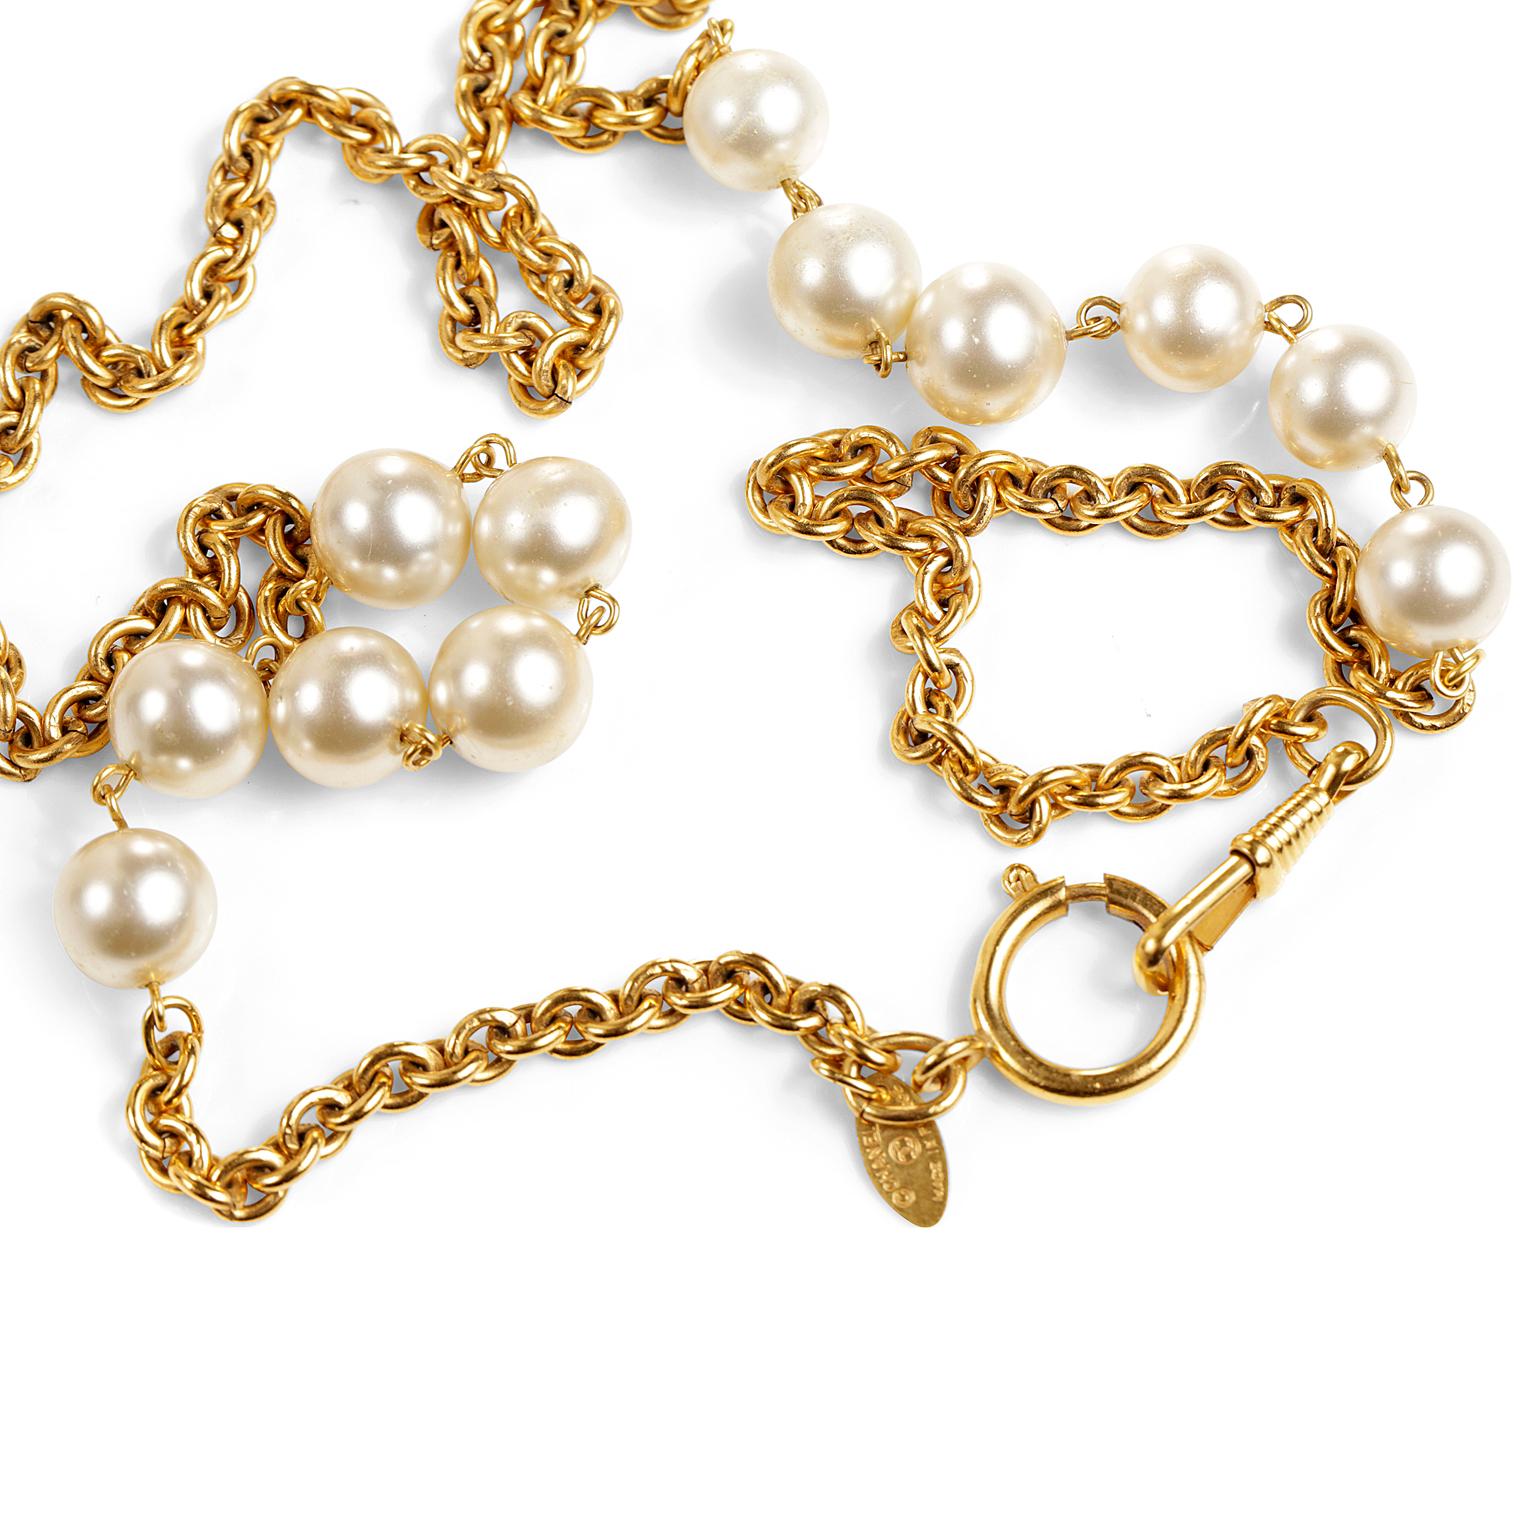 Diese authentische Chanel Gold und Perle Station Halskette ist in ausgezeichnetem Zustand.  Das in den 1980er Jahren hergestellte Stück ist wertbeständig und bleibt immer stilvoll.
Lange goldene Gliederkette mit eleganten Kunstperlenstationen auf